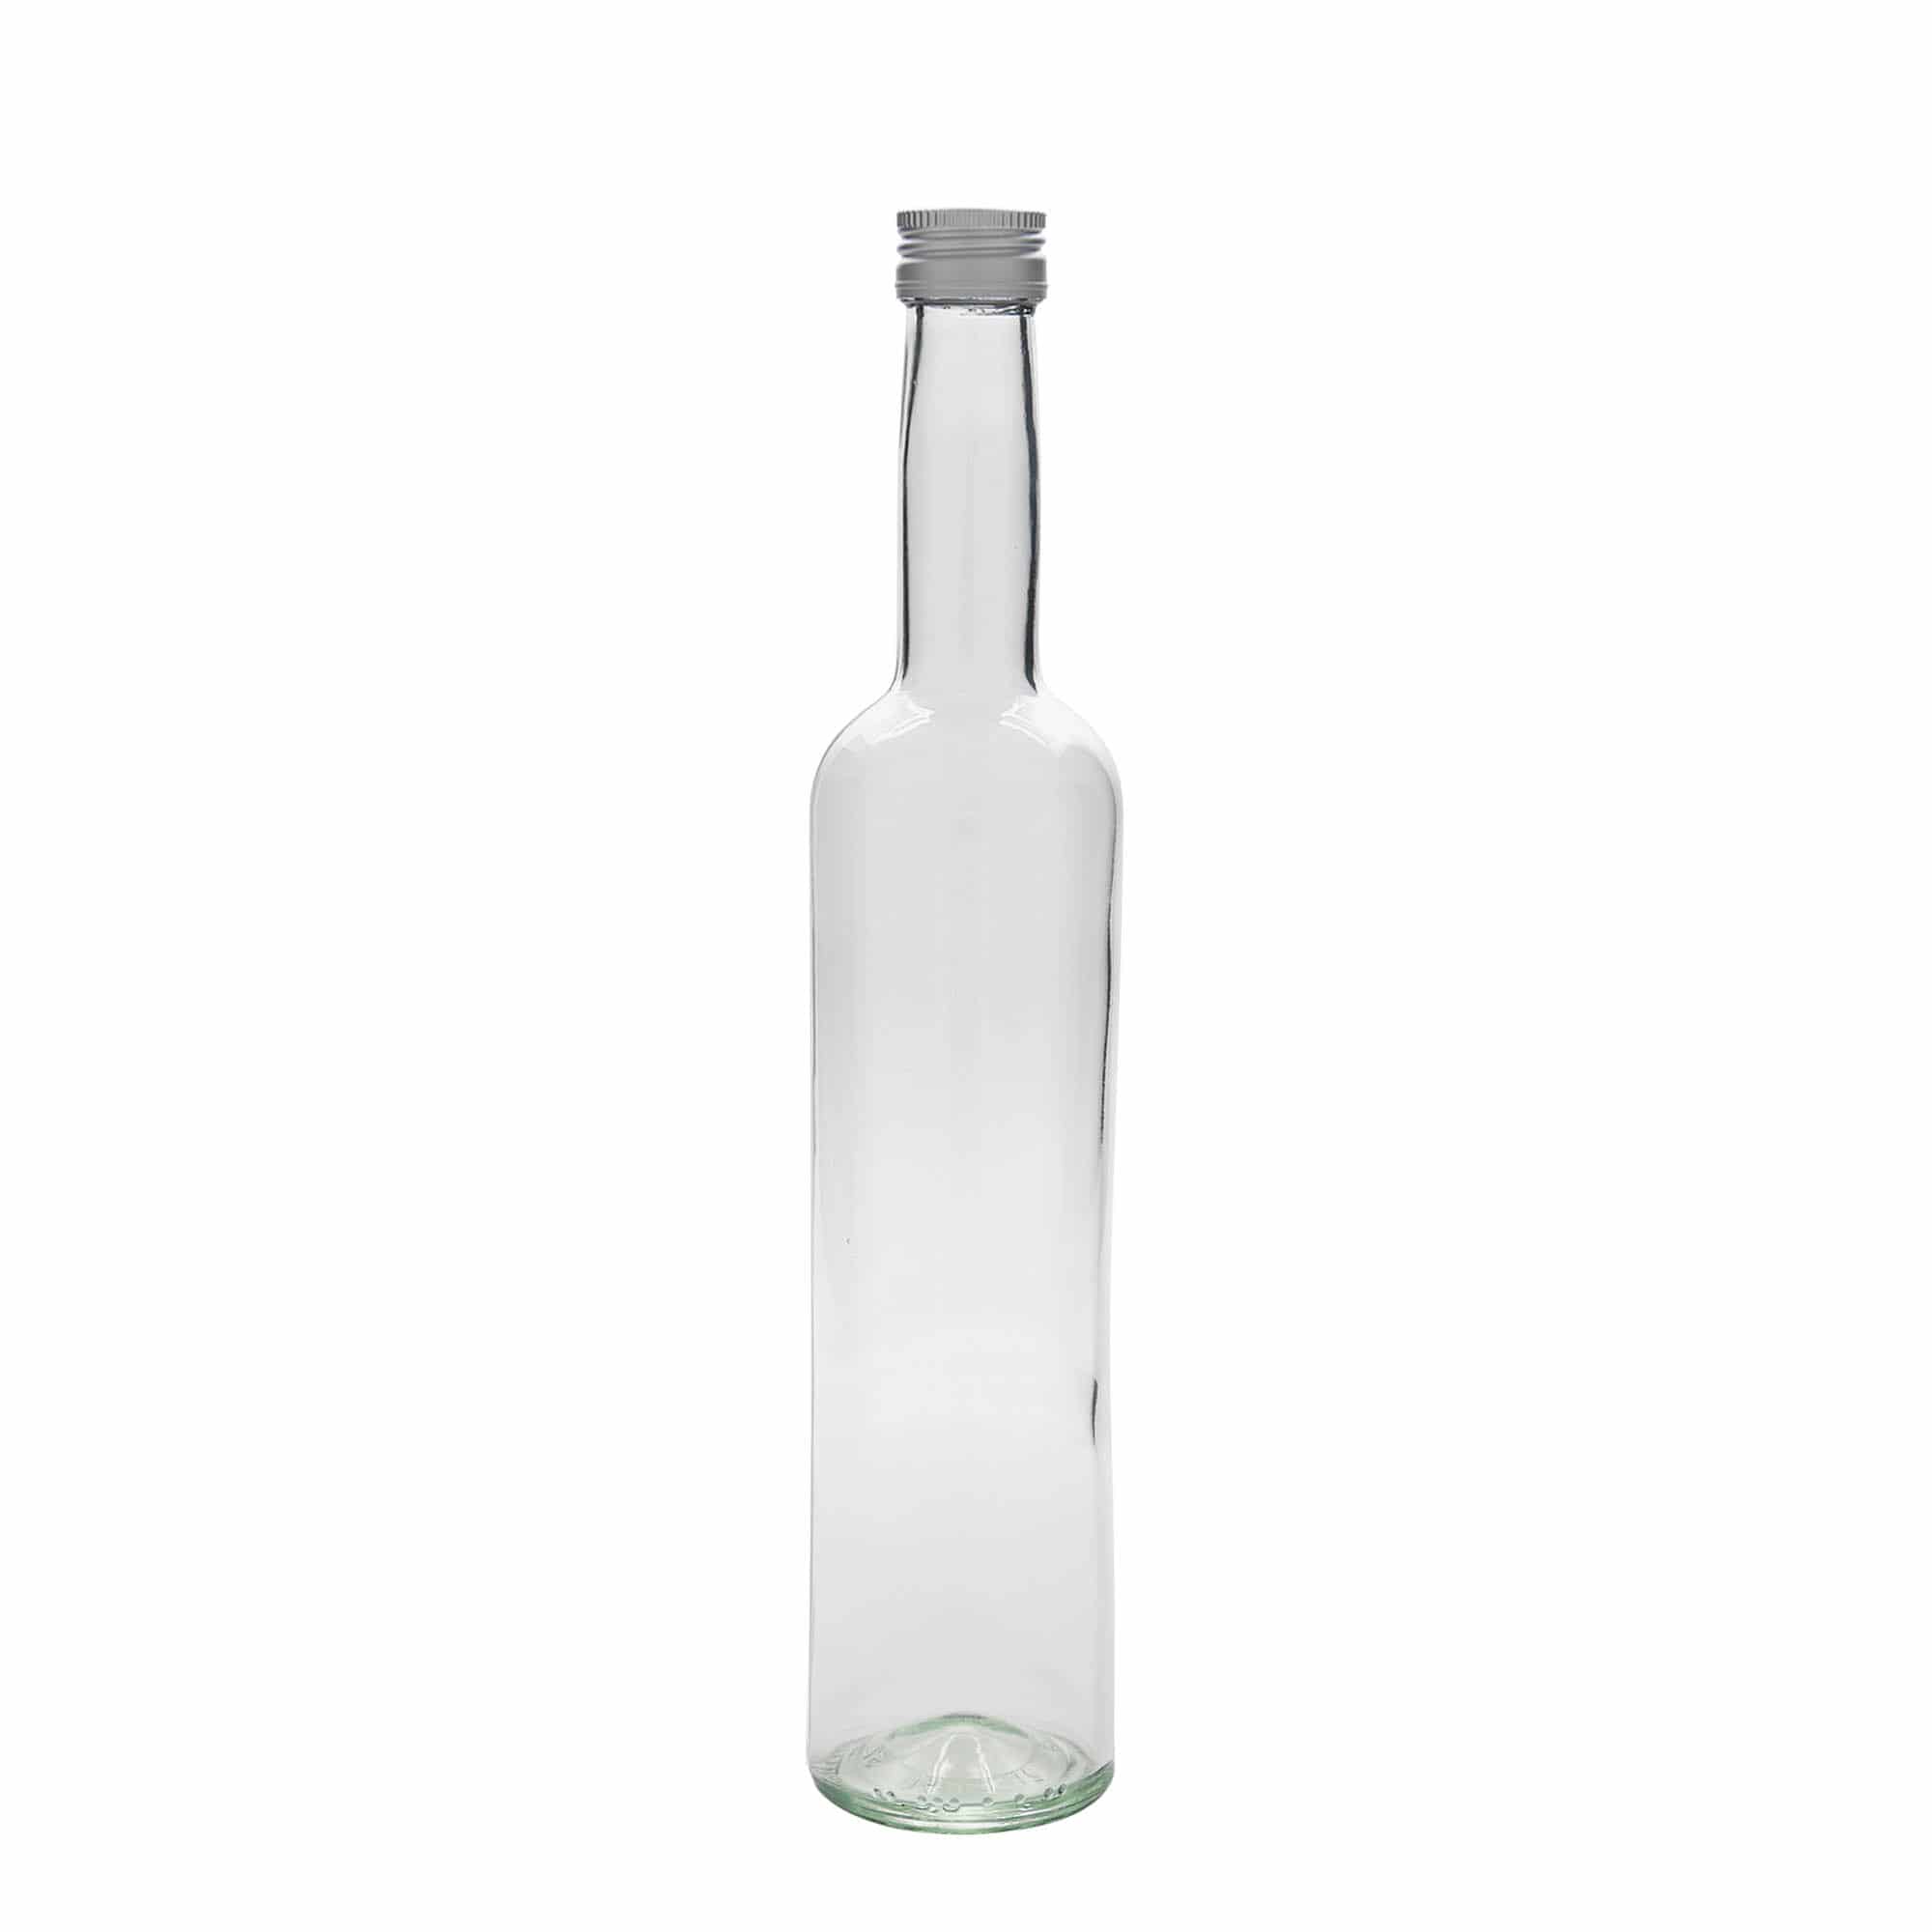 500 ml glass bottle 'Bordeaux', closure: PP 28